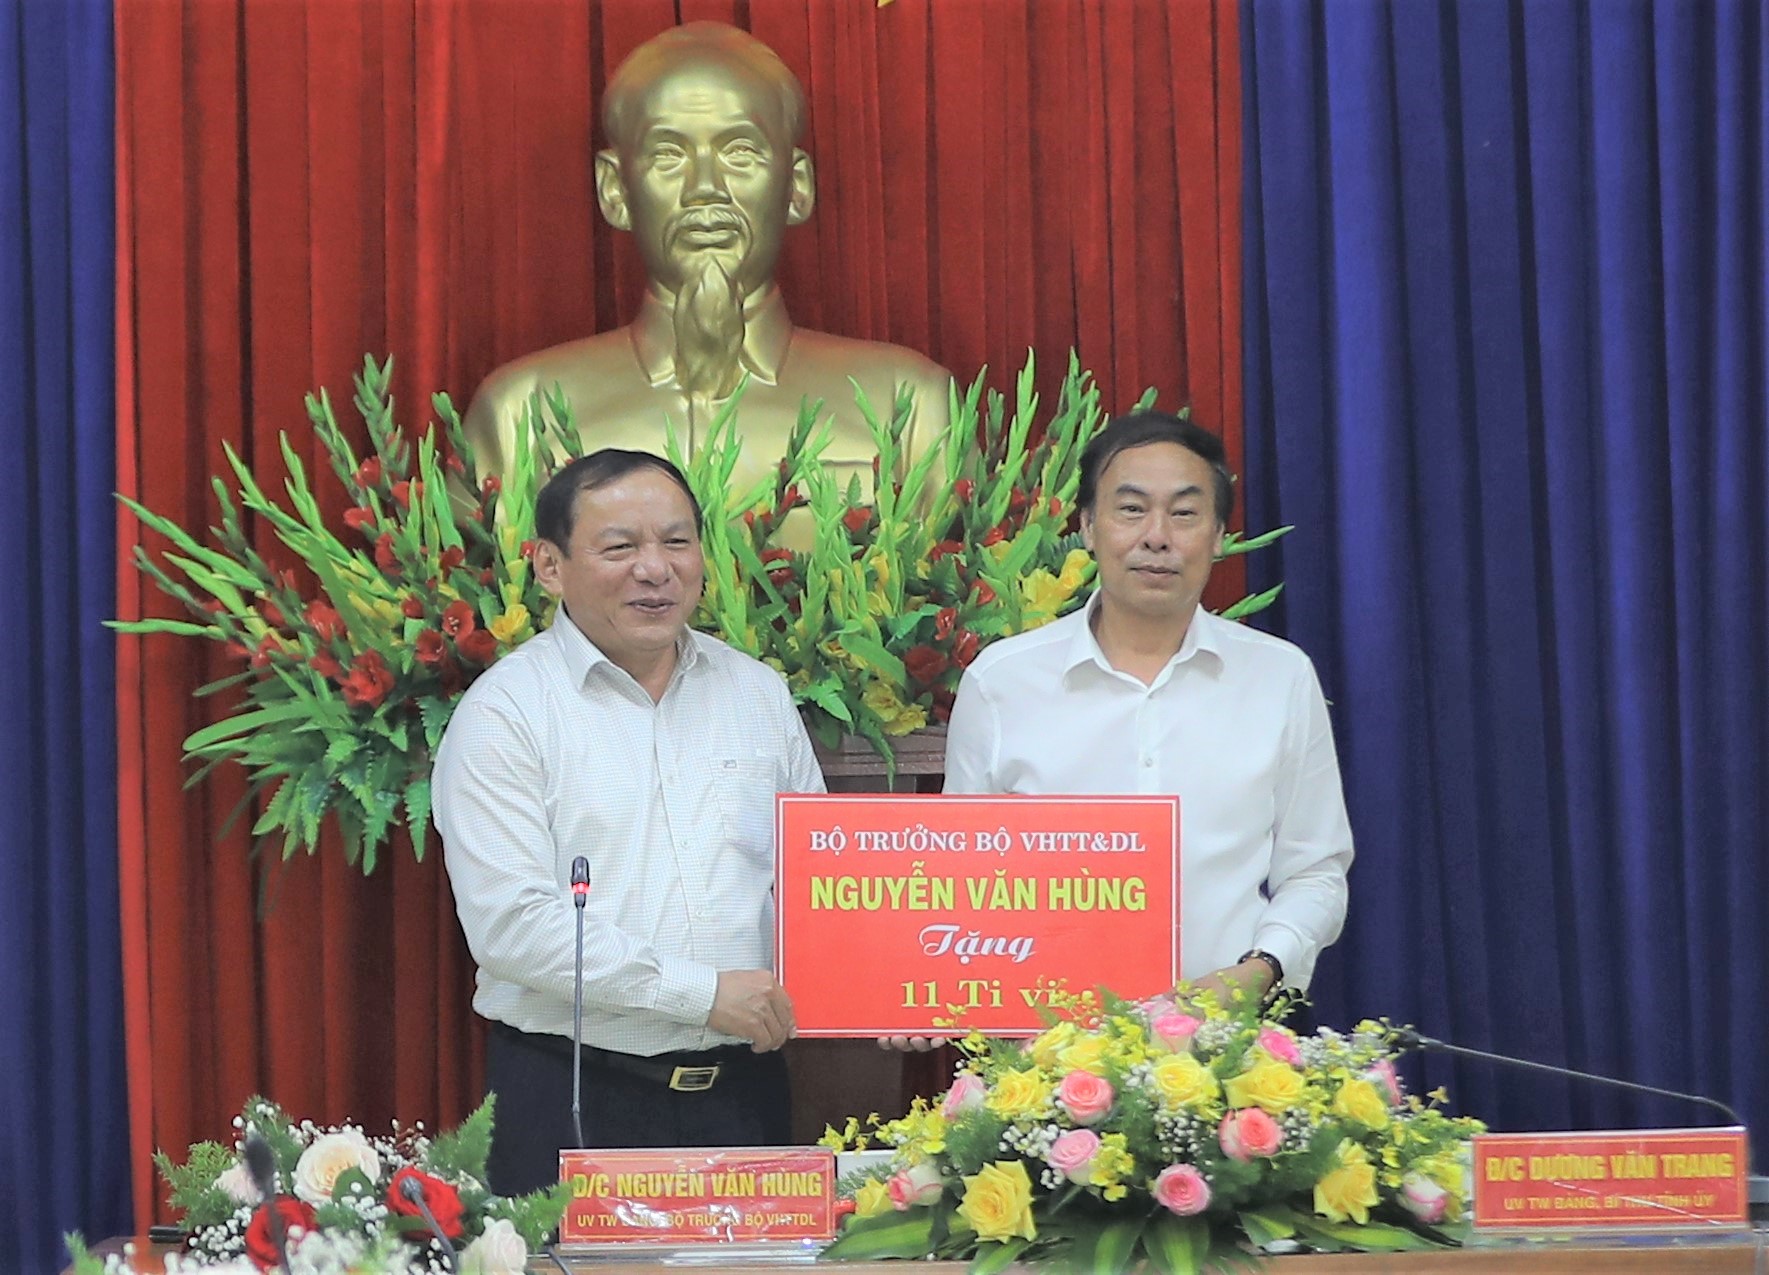 Bộ trưởng Nguyễn Văn Hùng: “Kon Tum có quang cảnh đẹp, sao không mạnh dạn đặt ước mơ trở thành trung tâm hội nghị của khu vực miền Trung-Tây Nguyên” - Ảnh 9.